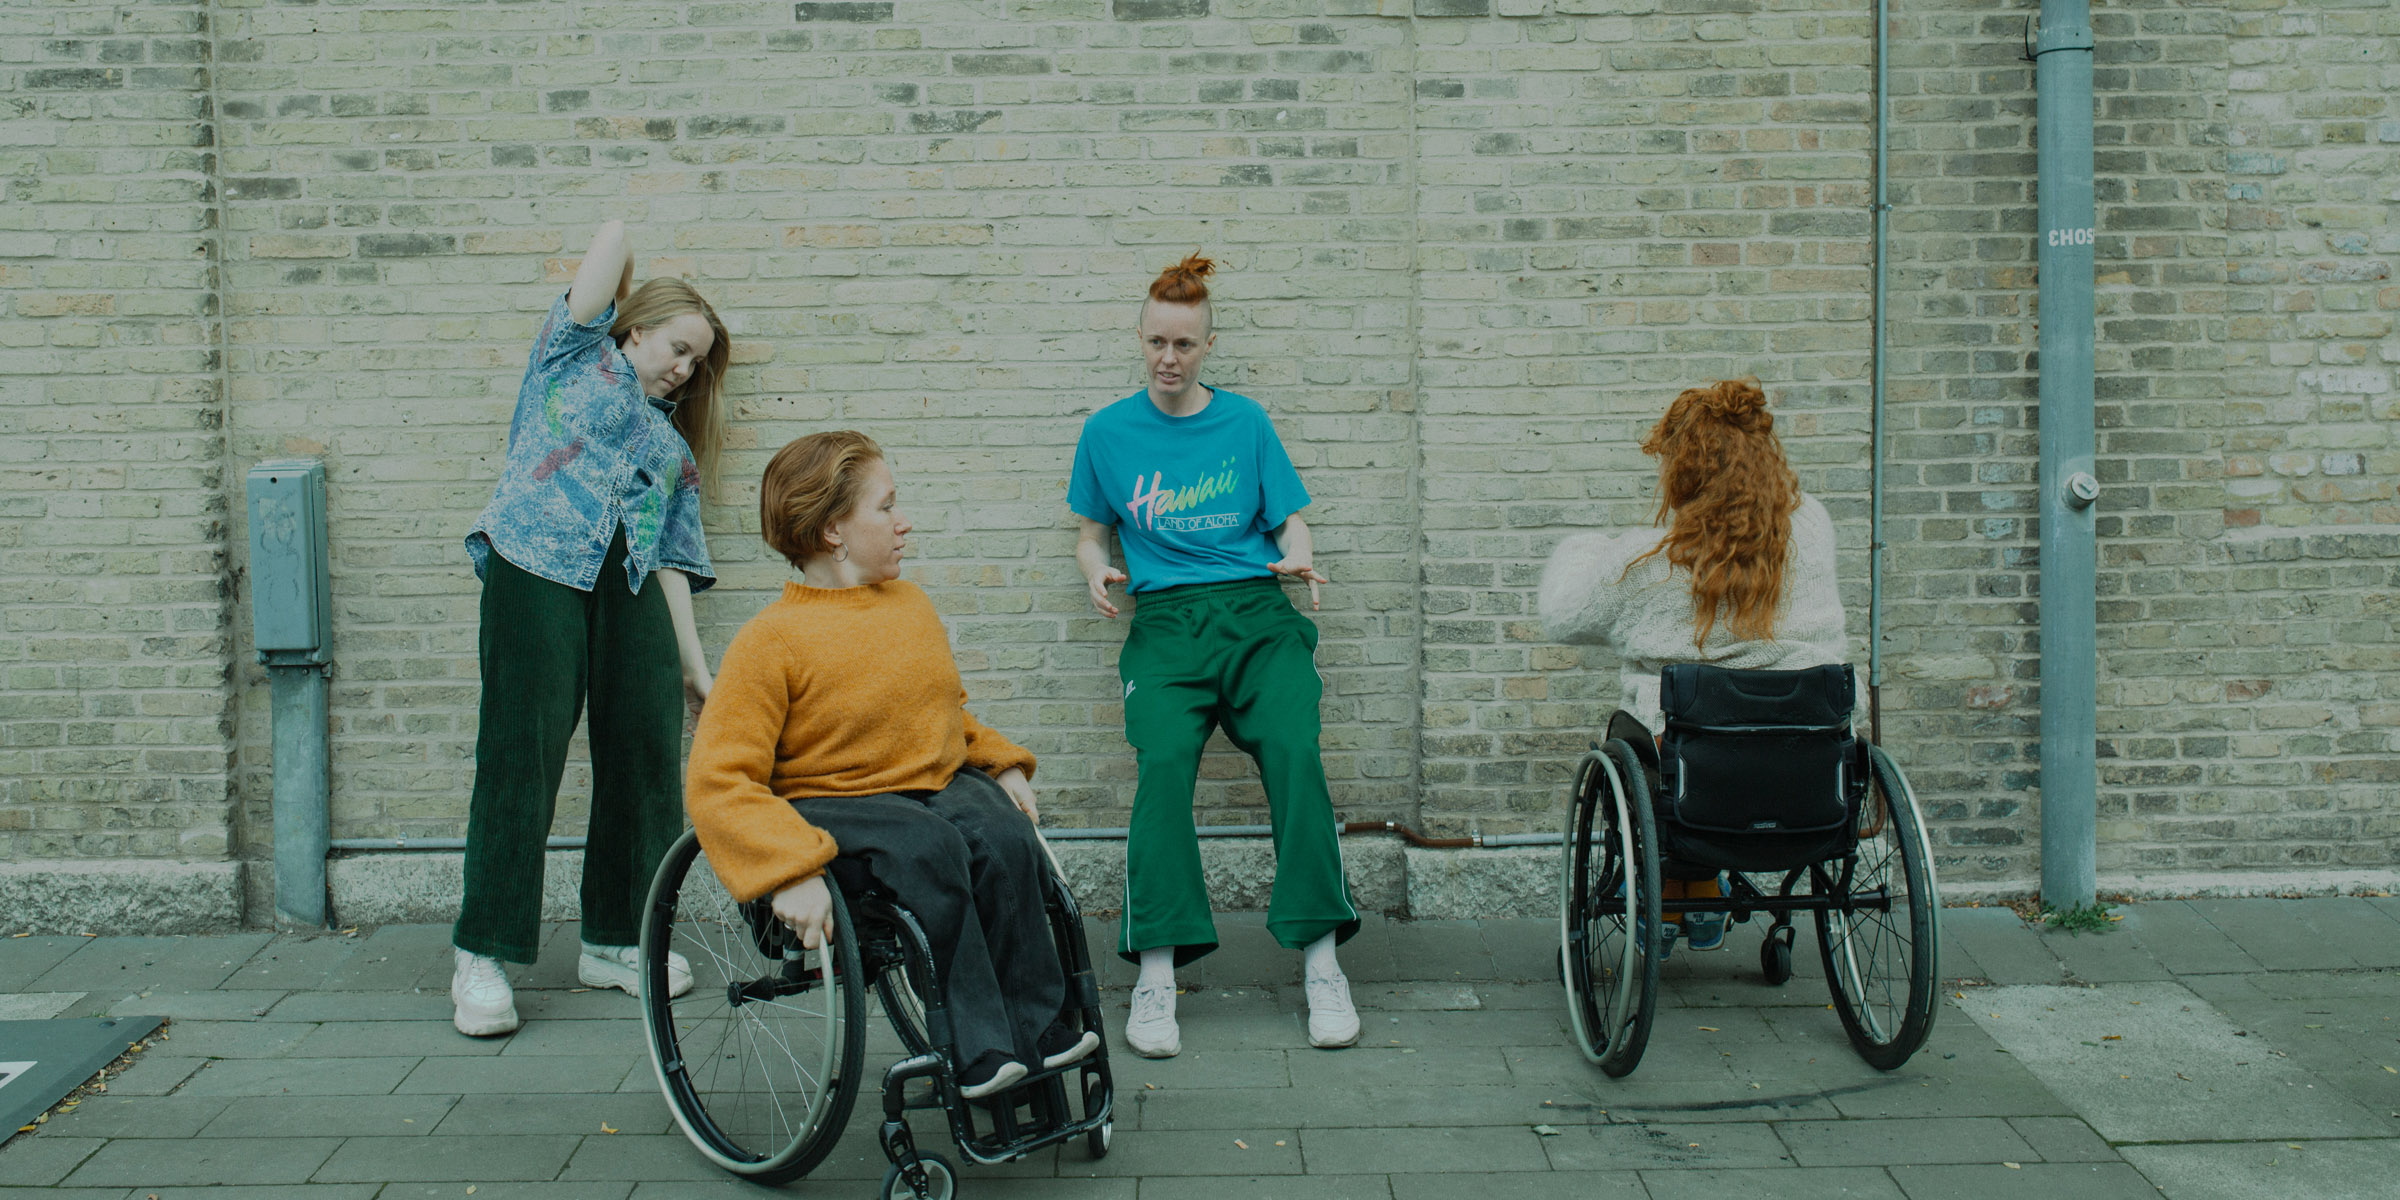 På bilden ser vi fyra dansare i färgglada träningskläder. Två av dem står lutade mot en gul tegelvägg, de två andra sitter i varsin rullstol. Foto: Malin Johansson